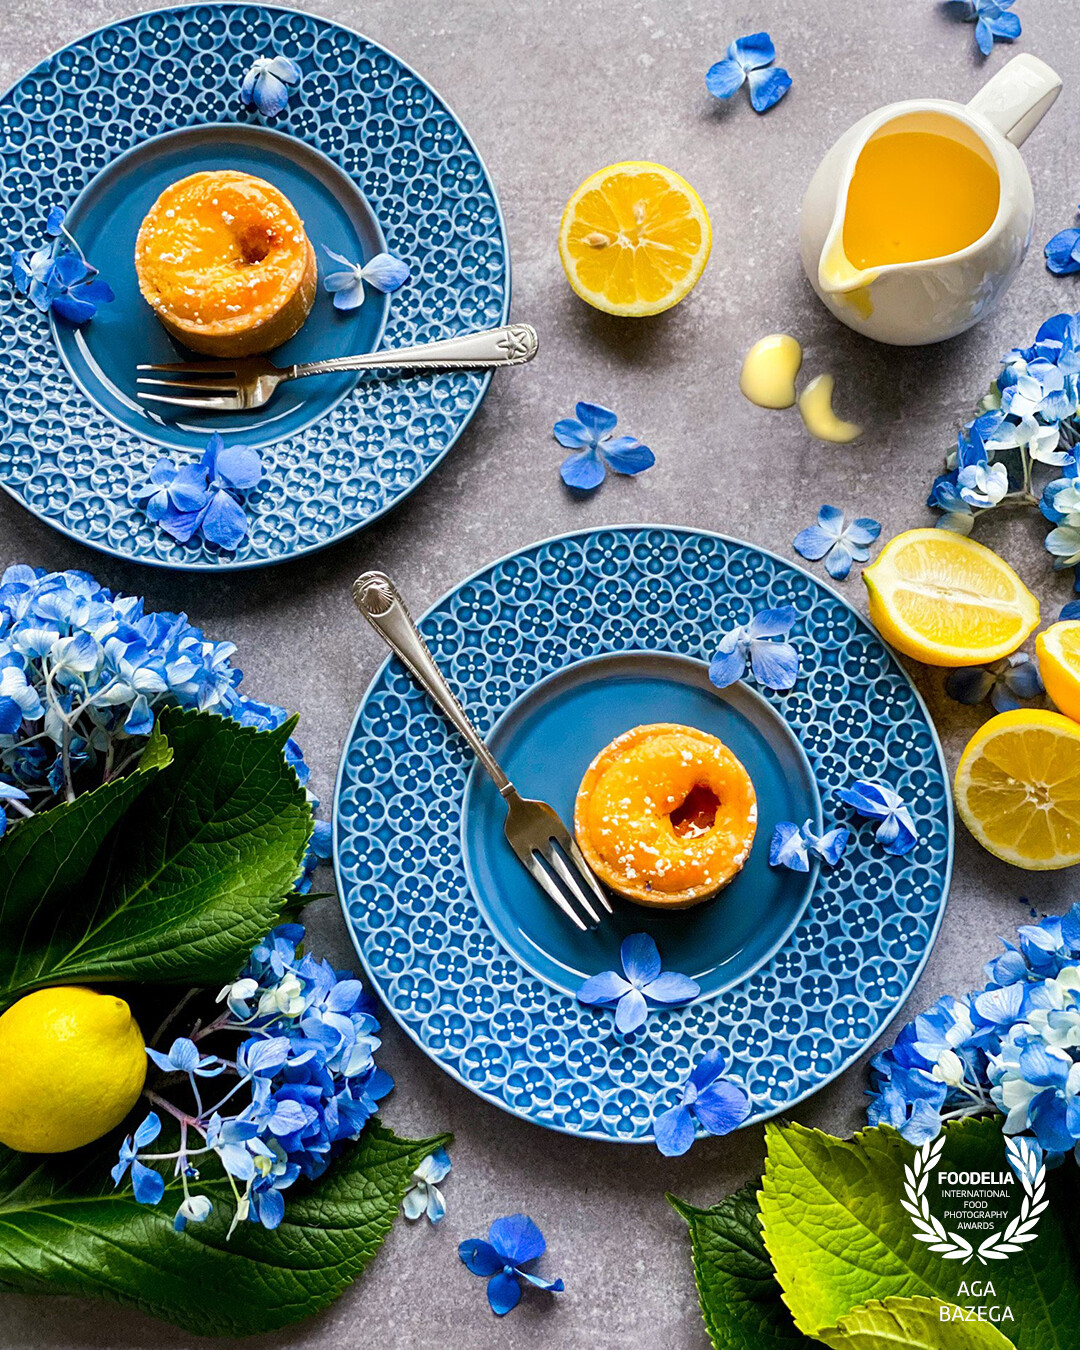 Lemon dessert, image captured with natural light.